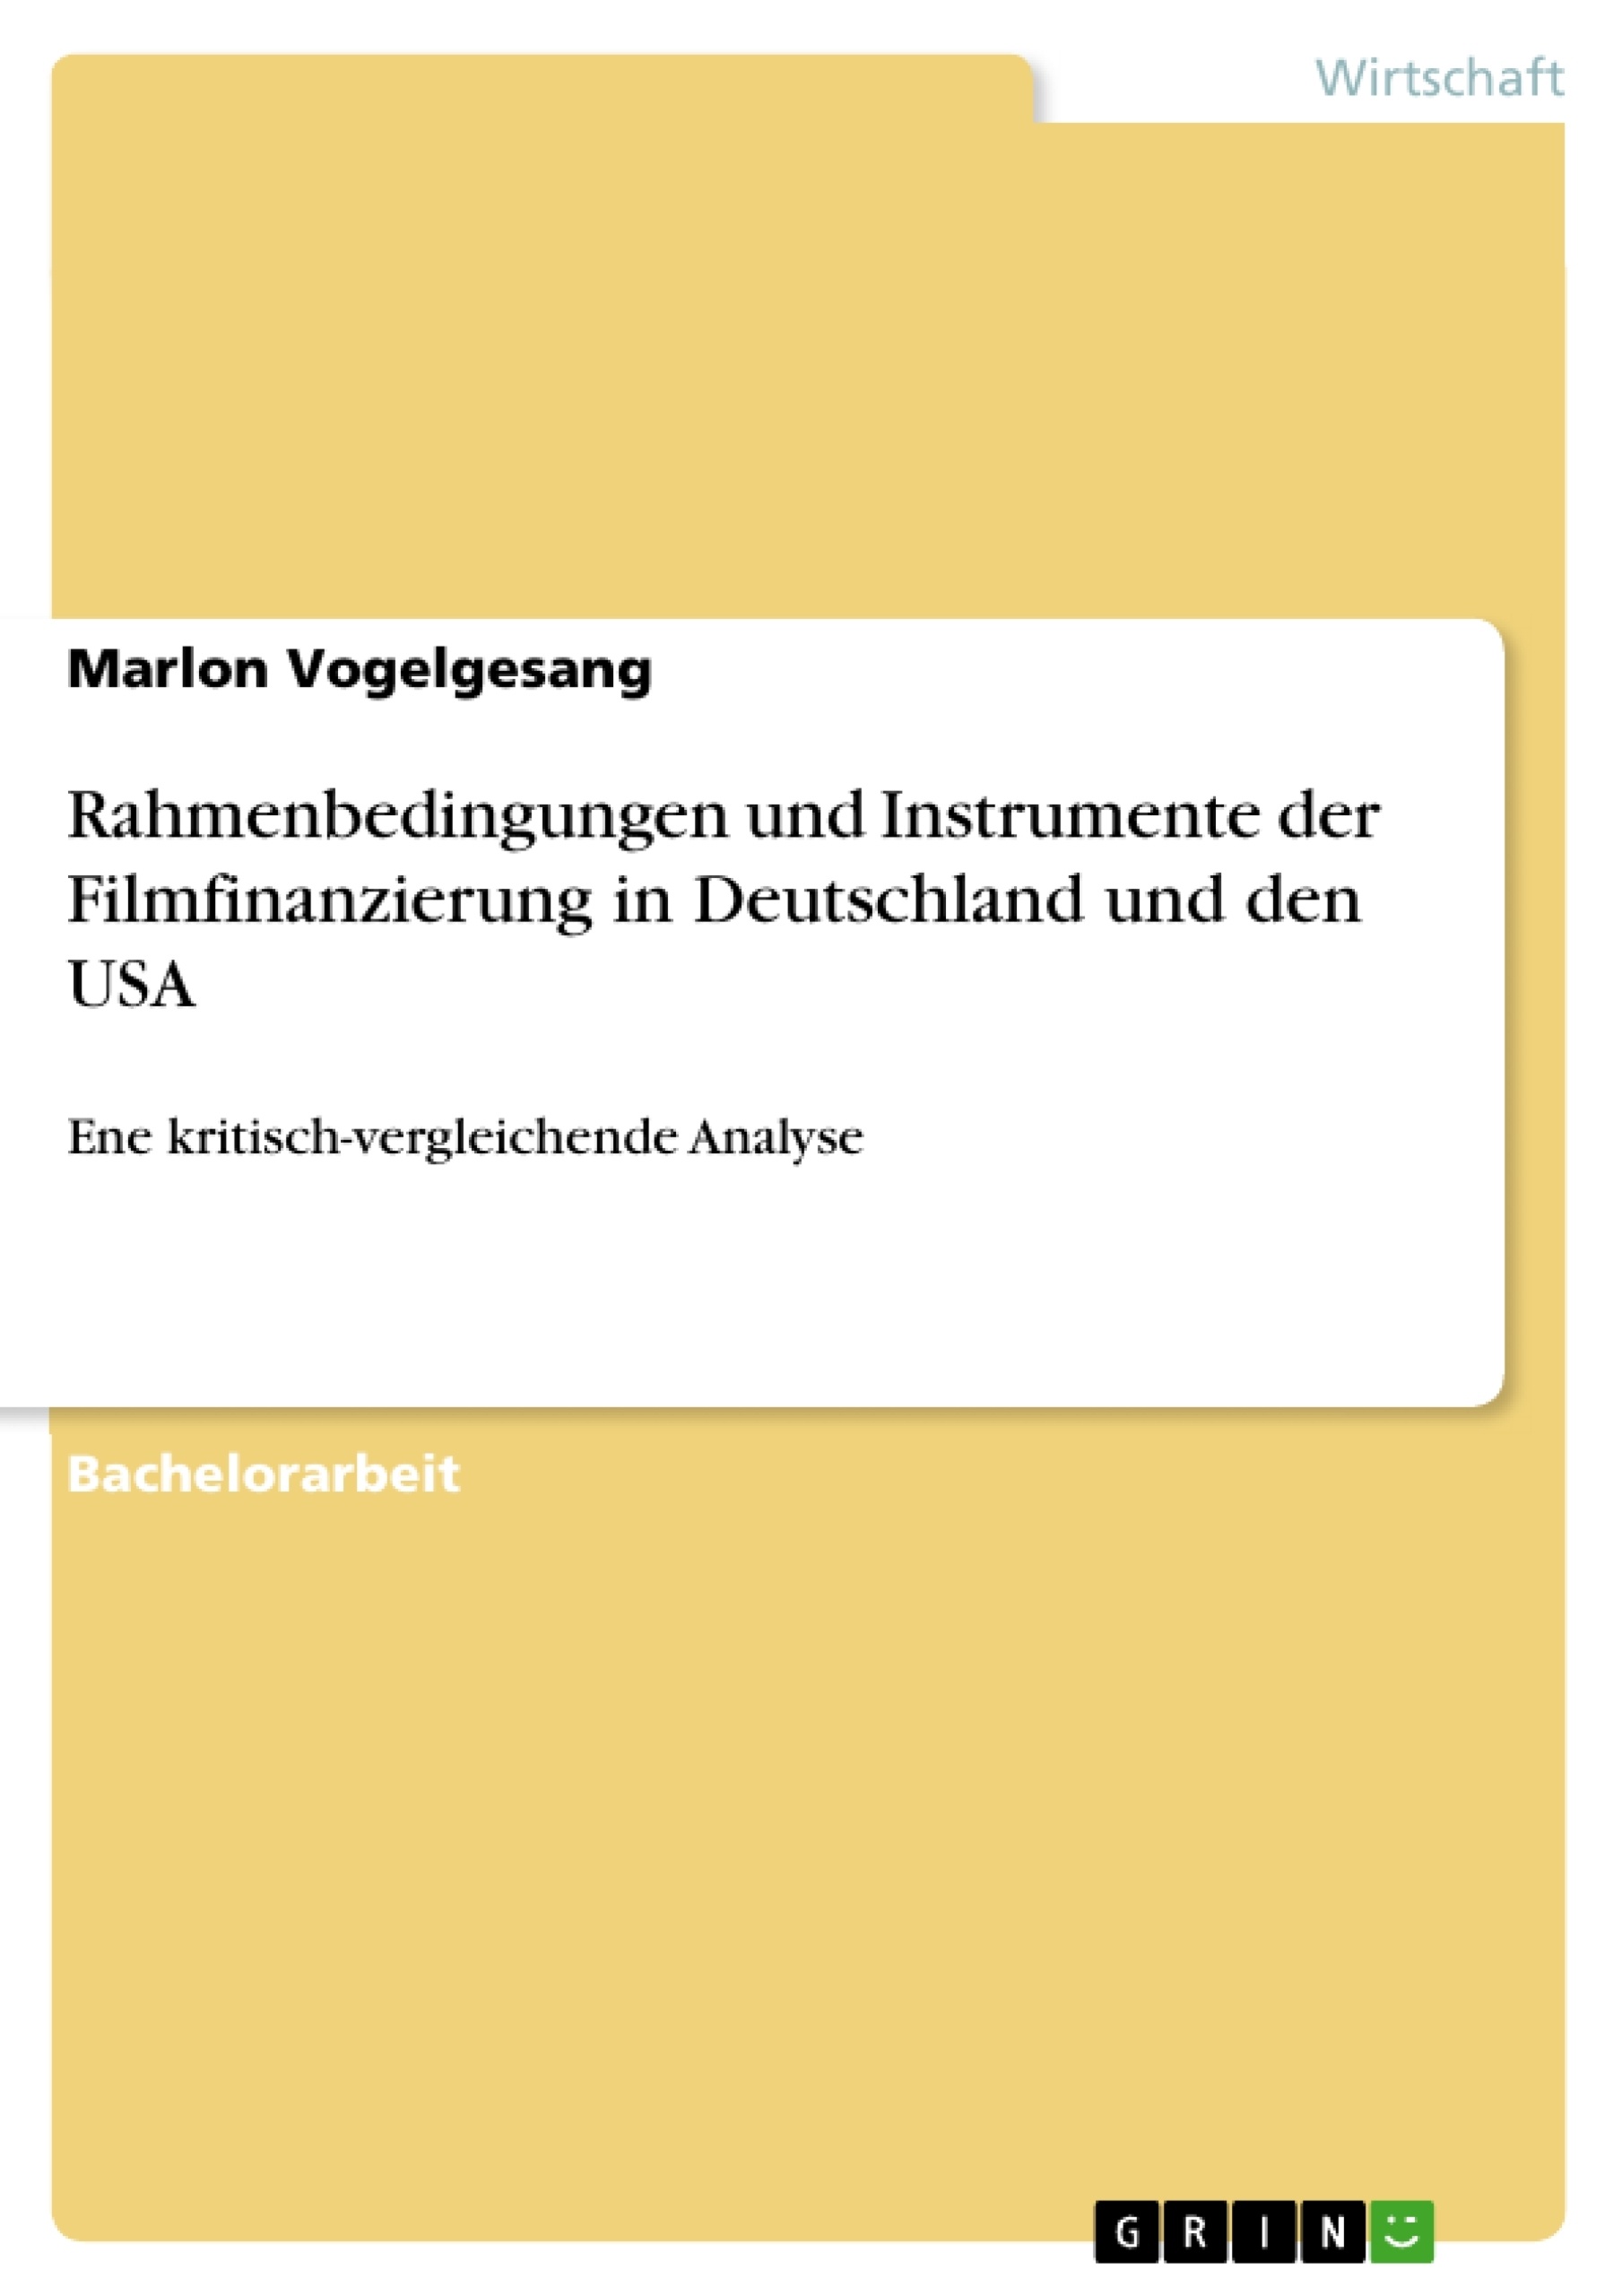 Título: Rahmenbedingungen und Instrumente der Filmfinanzierung in Deutschland und den USA